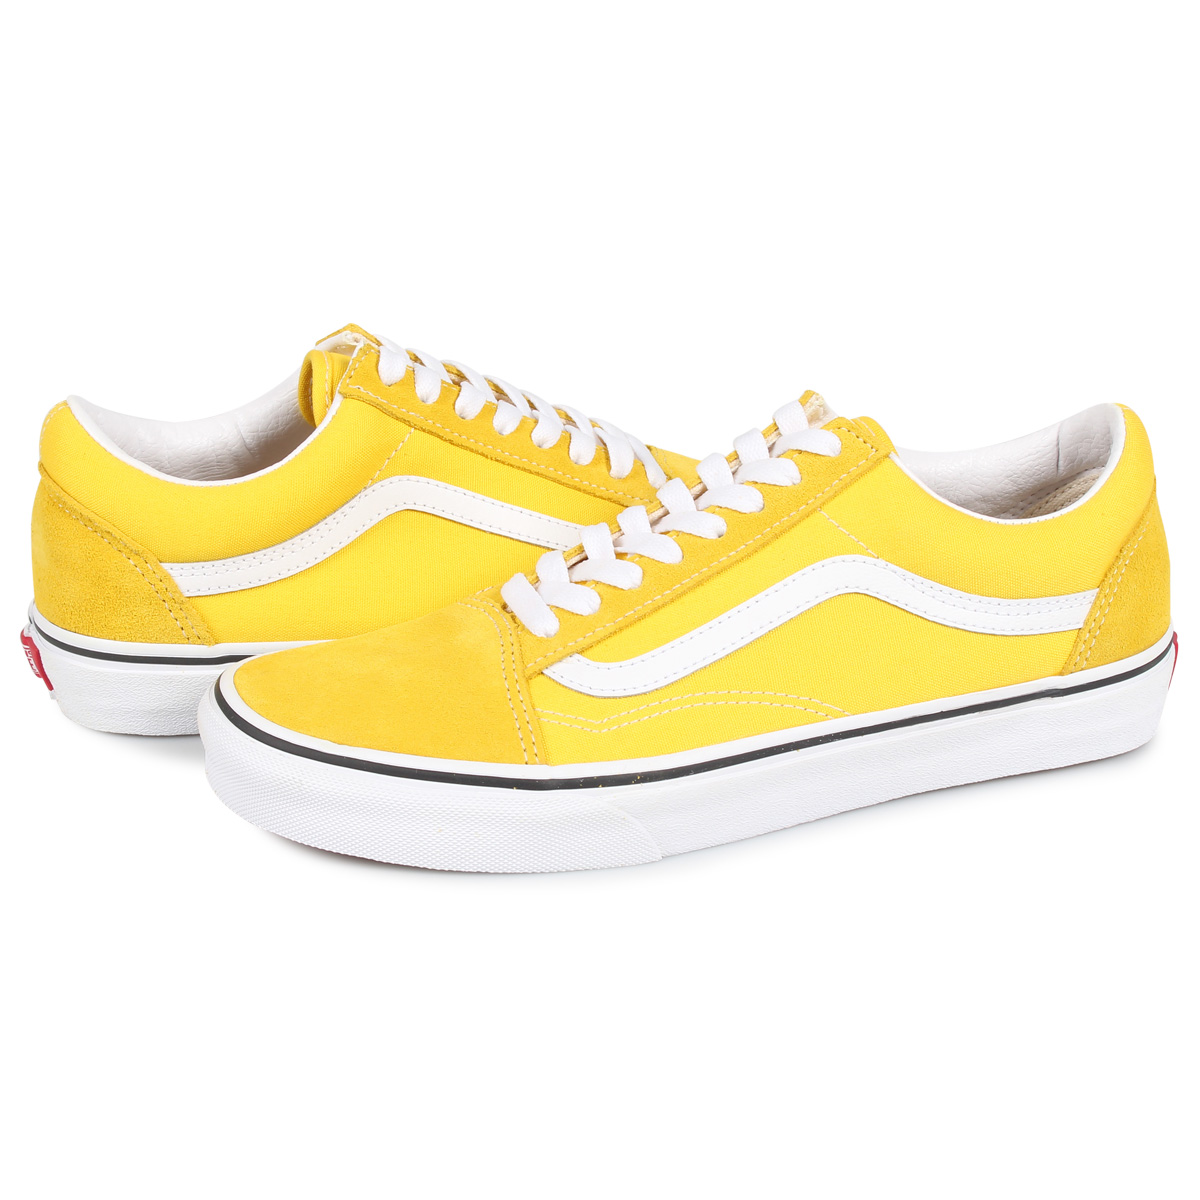 yellow vans tennis shoes